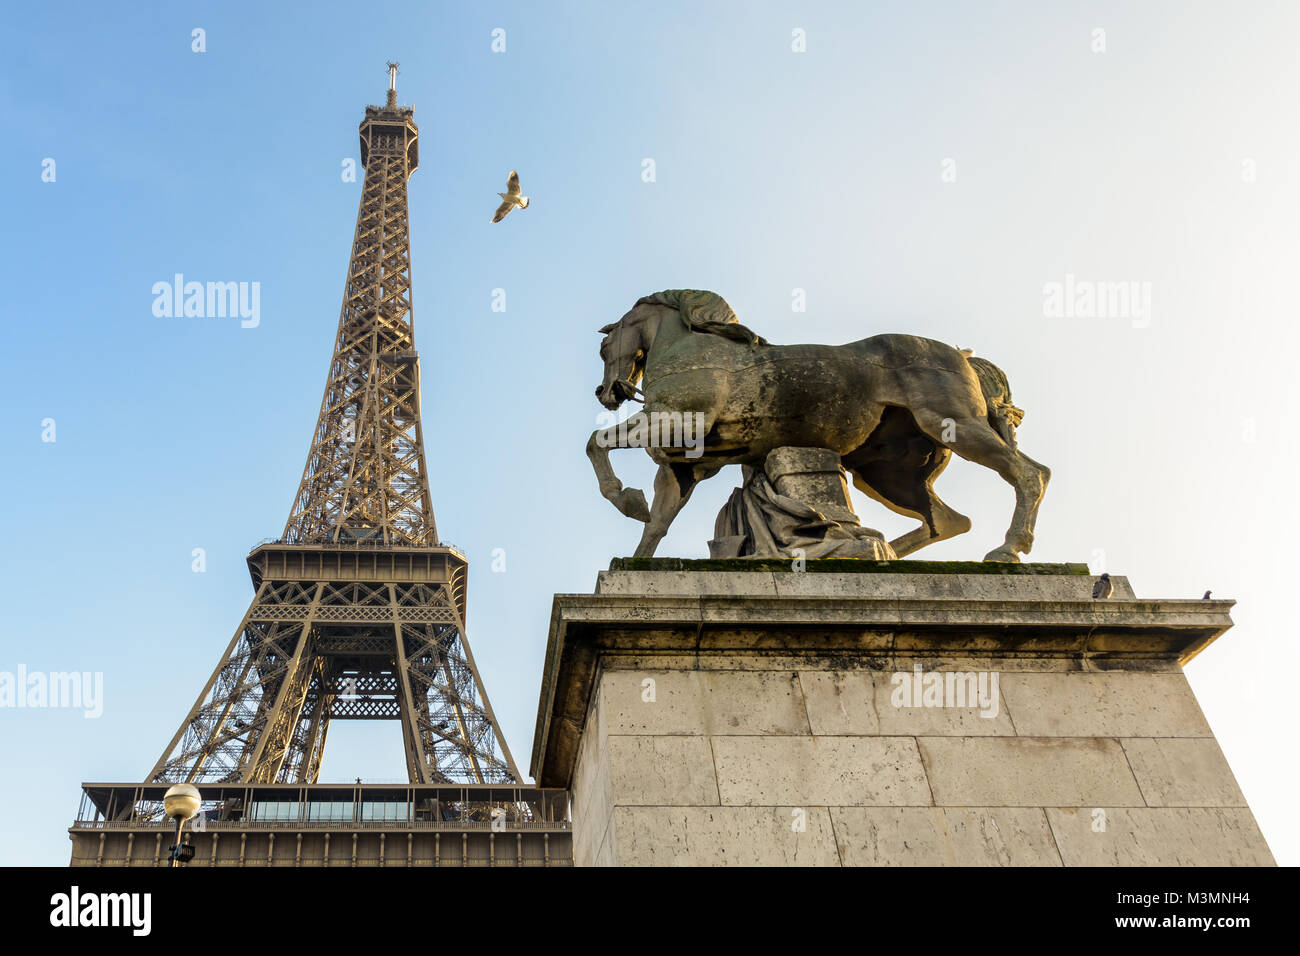 Low angle view of la Tour Eiffel à Paris, vu depuis le pont d'Iéna contre le ciel bleu, avec un equestrian statue en pierre au premier plan. Banque D'Images